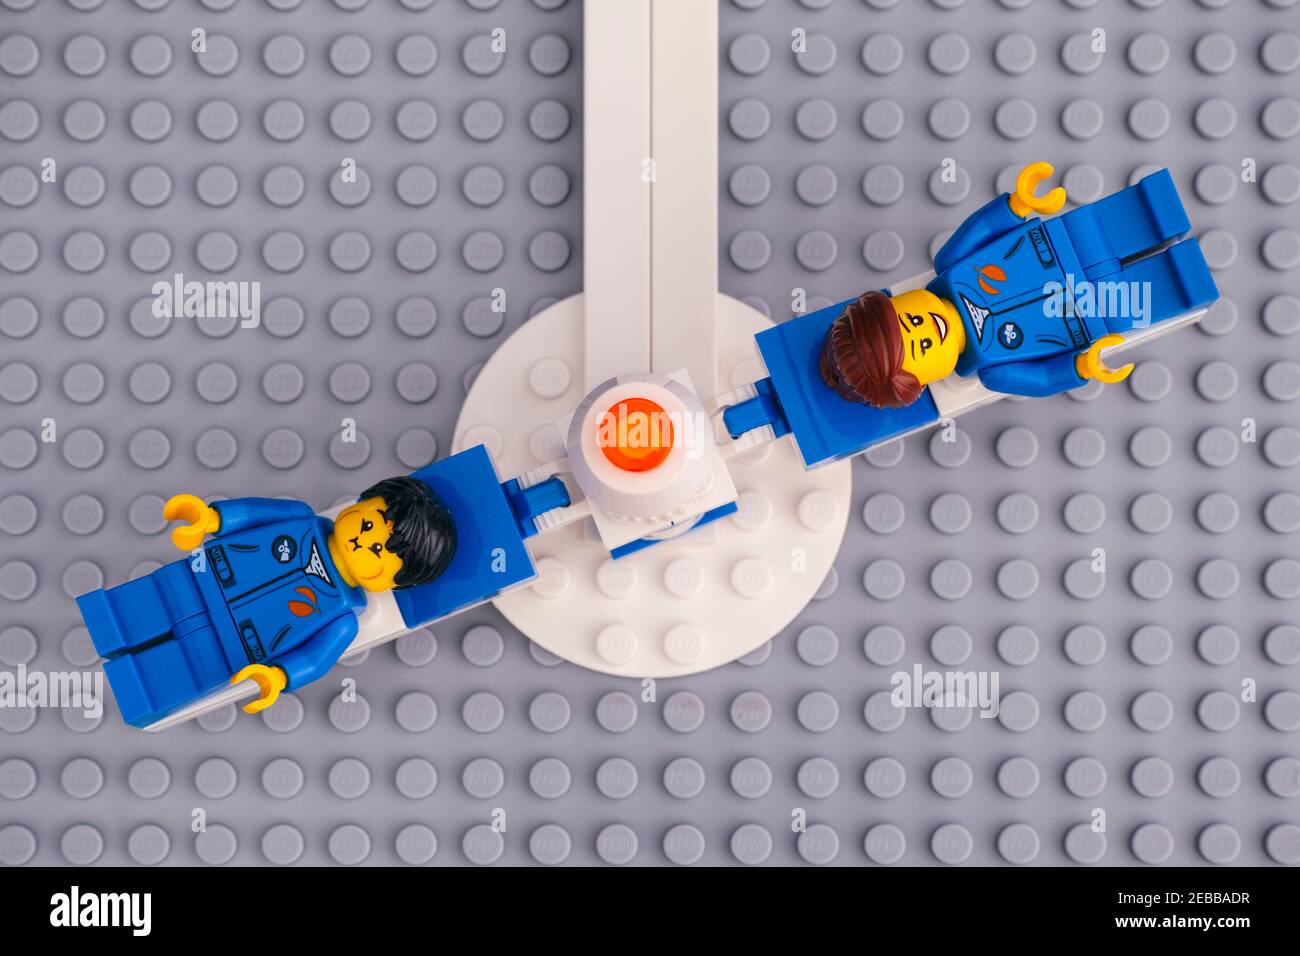 Tambov, Federación Rusa - 30 de abril de 2020 Lego hilando máquina de  entrenamiento de astronautas de la fuerza G con dos minifigures de  astronauta en la placa base gris. Mejor película